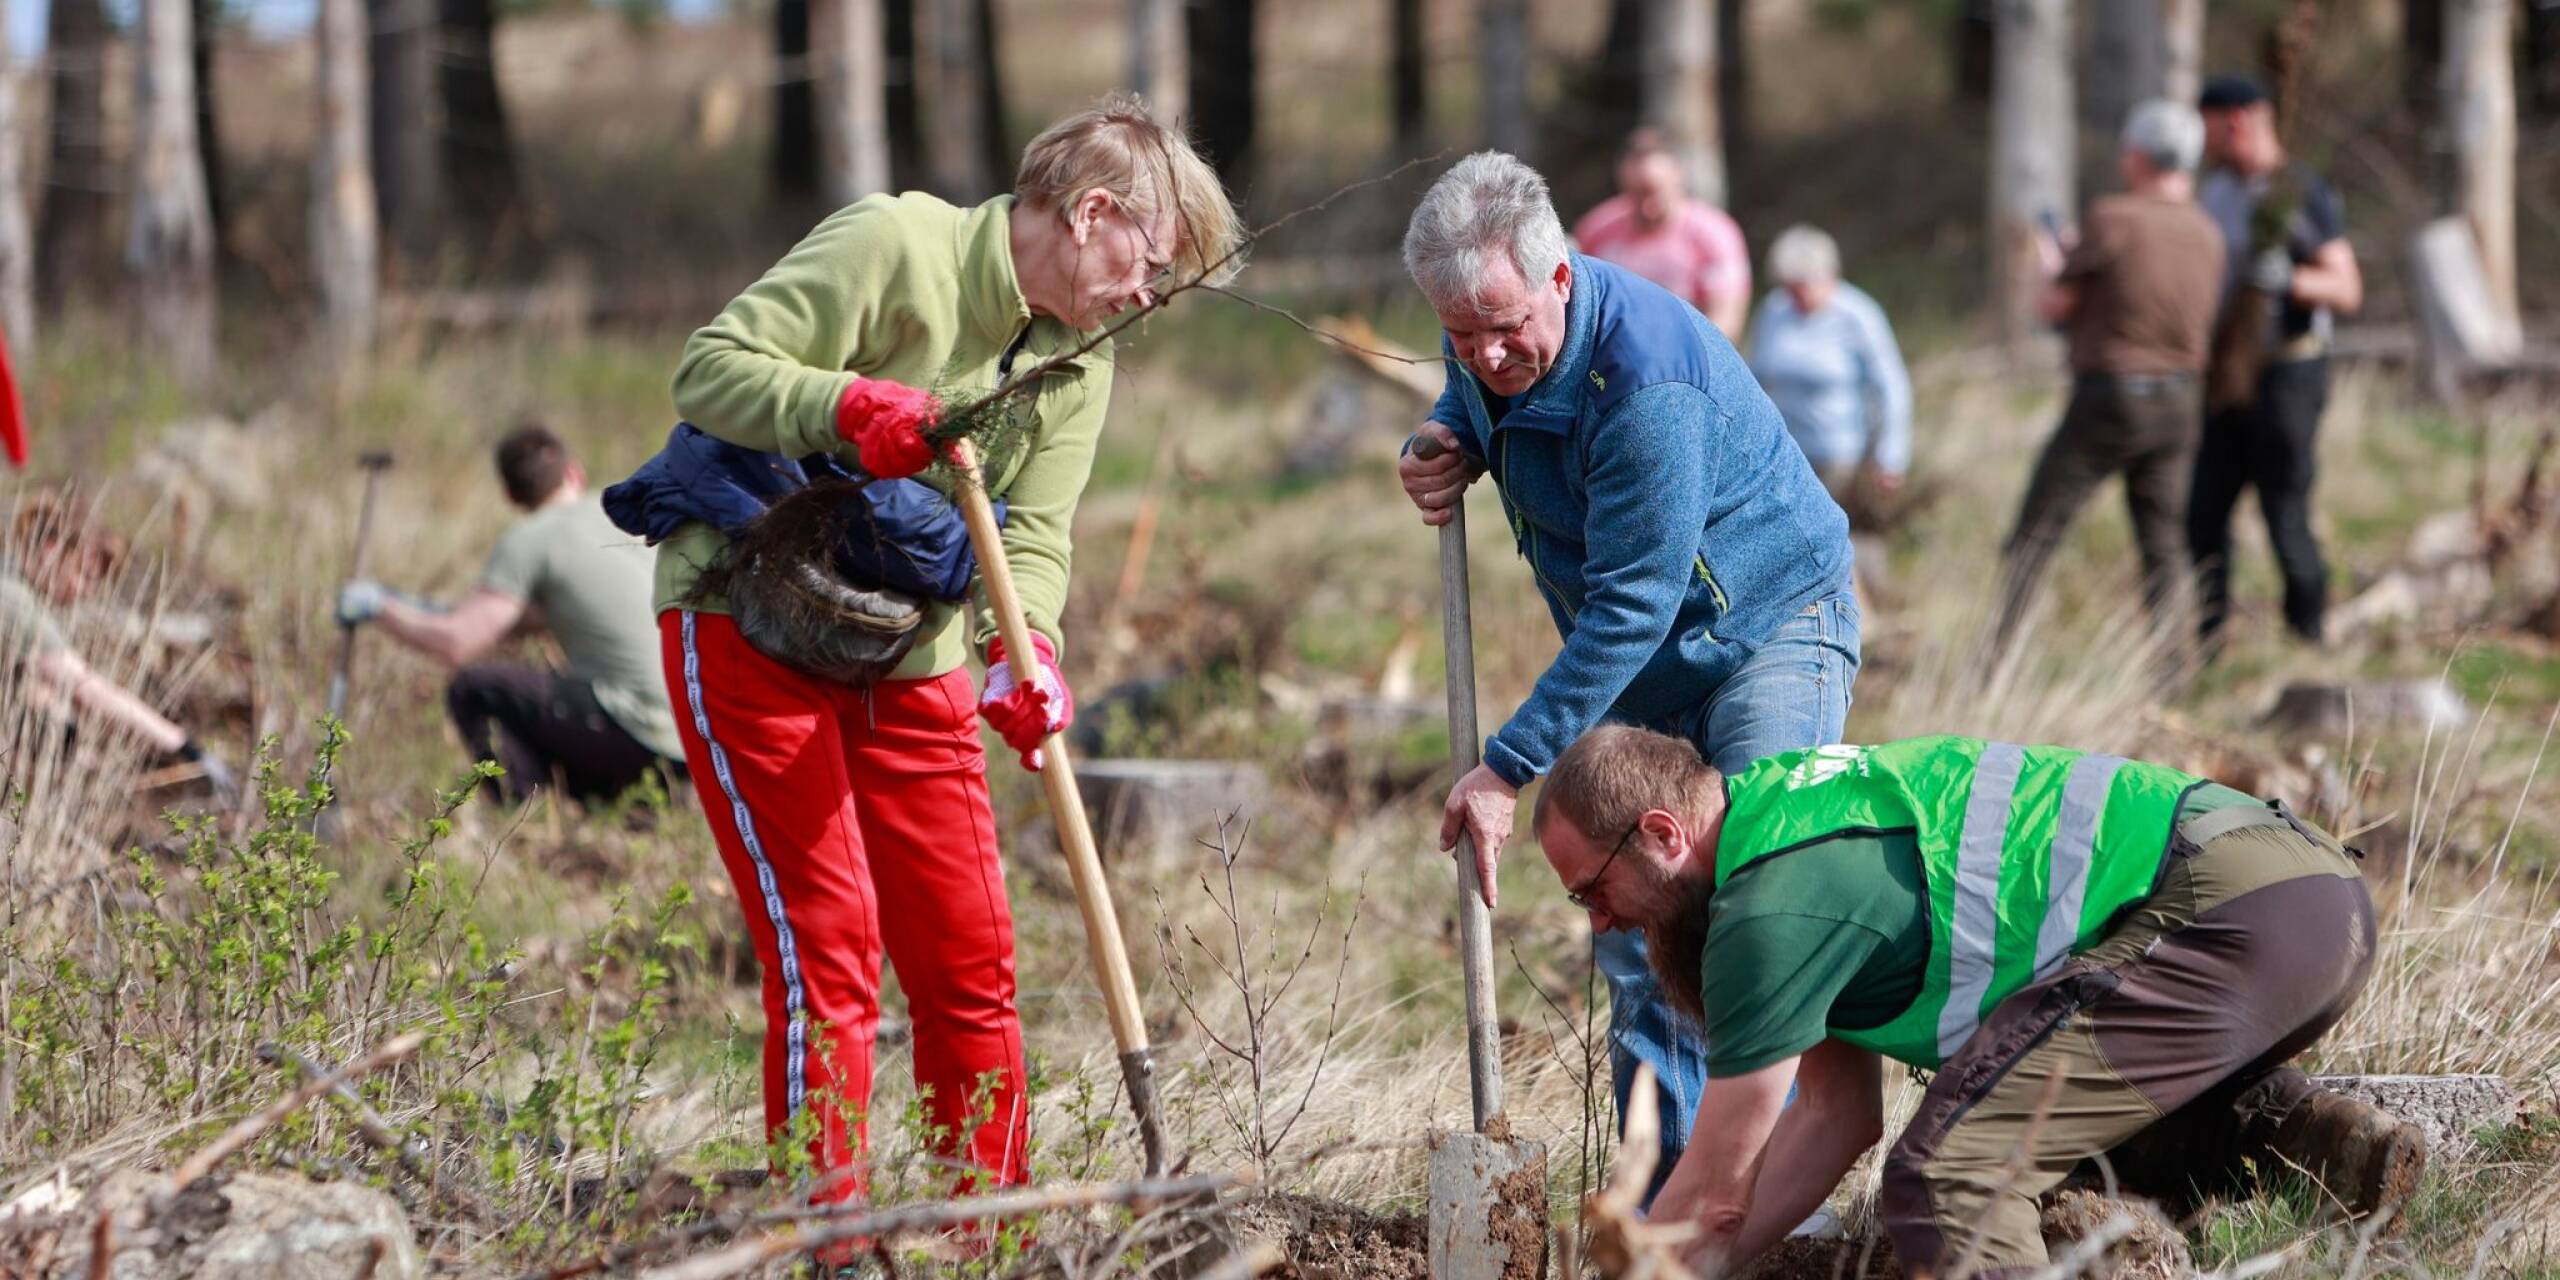 Freiwillige Helfer pflanzen Baumsetzlinge für eine Aufforstungsaktion im Stadtforst Wernigerode in Sachsen-Anhalt. Mehr als 6.000 Bäume, darunter Hainbuchen, Rotbuchen und Douglasien, werden gesetzt, um die die Aufforstung des Waldes weiter voranzubringen.